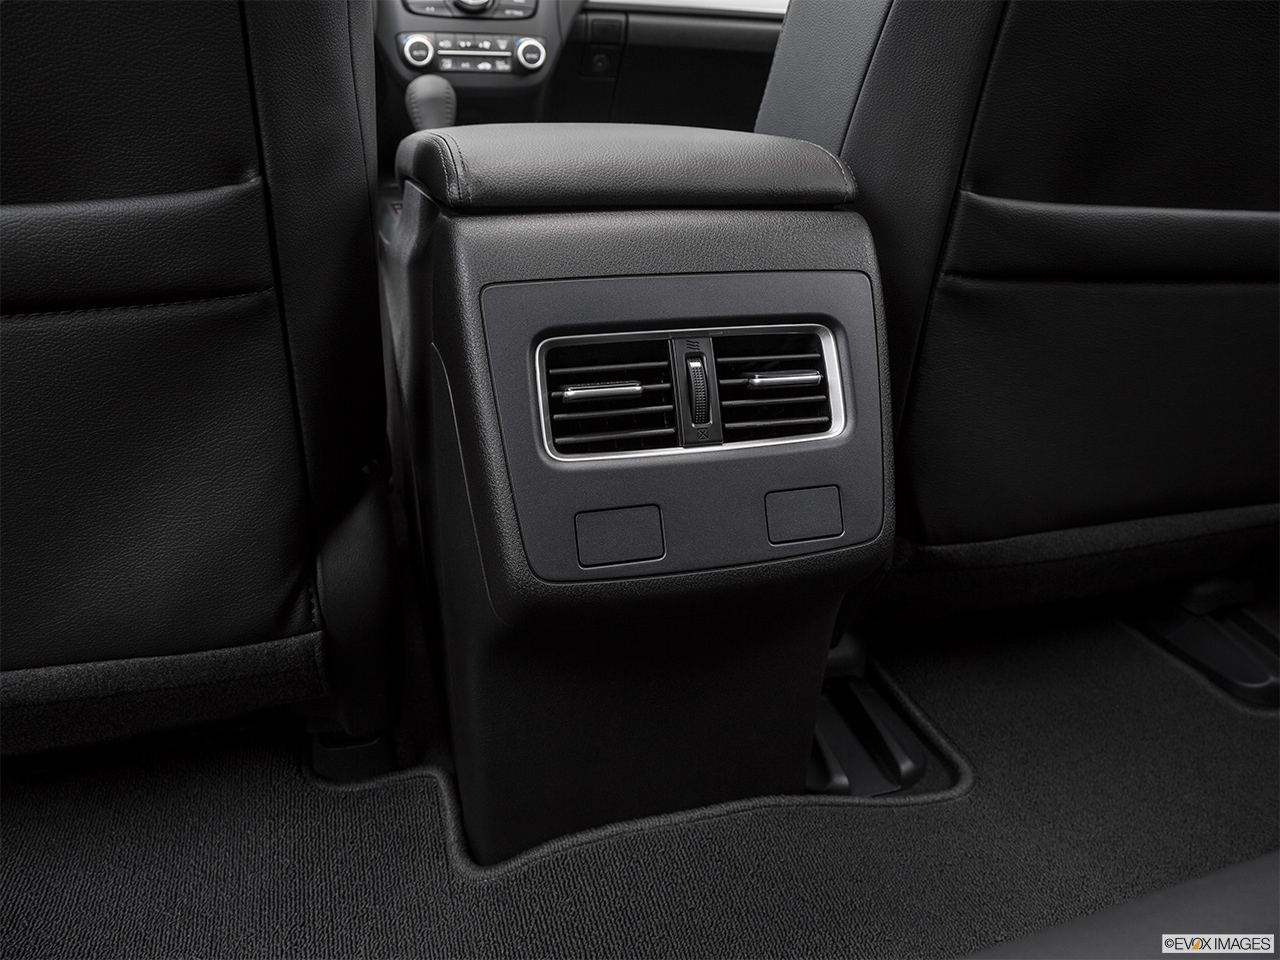 2017 Acura RDX AWD Rear A/C controls. 